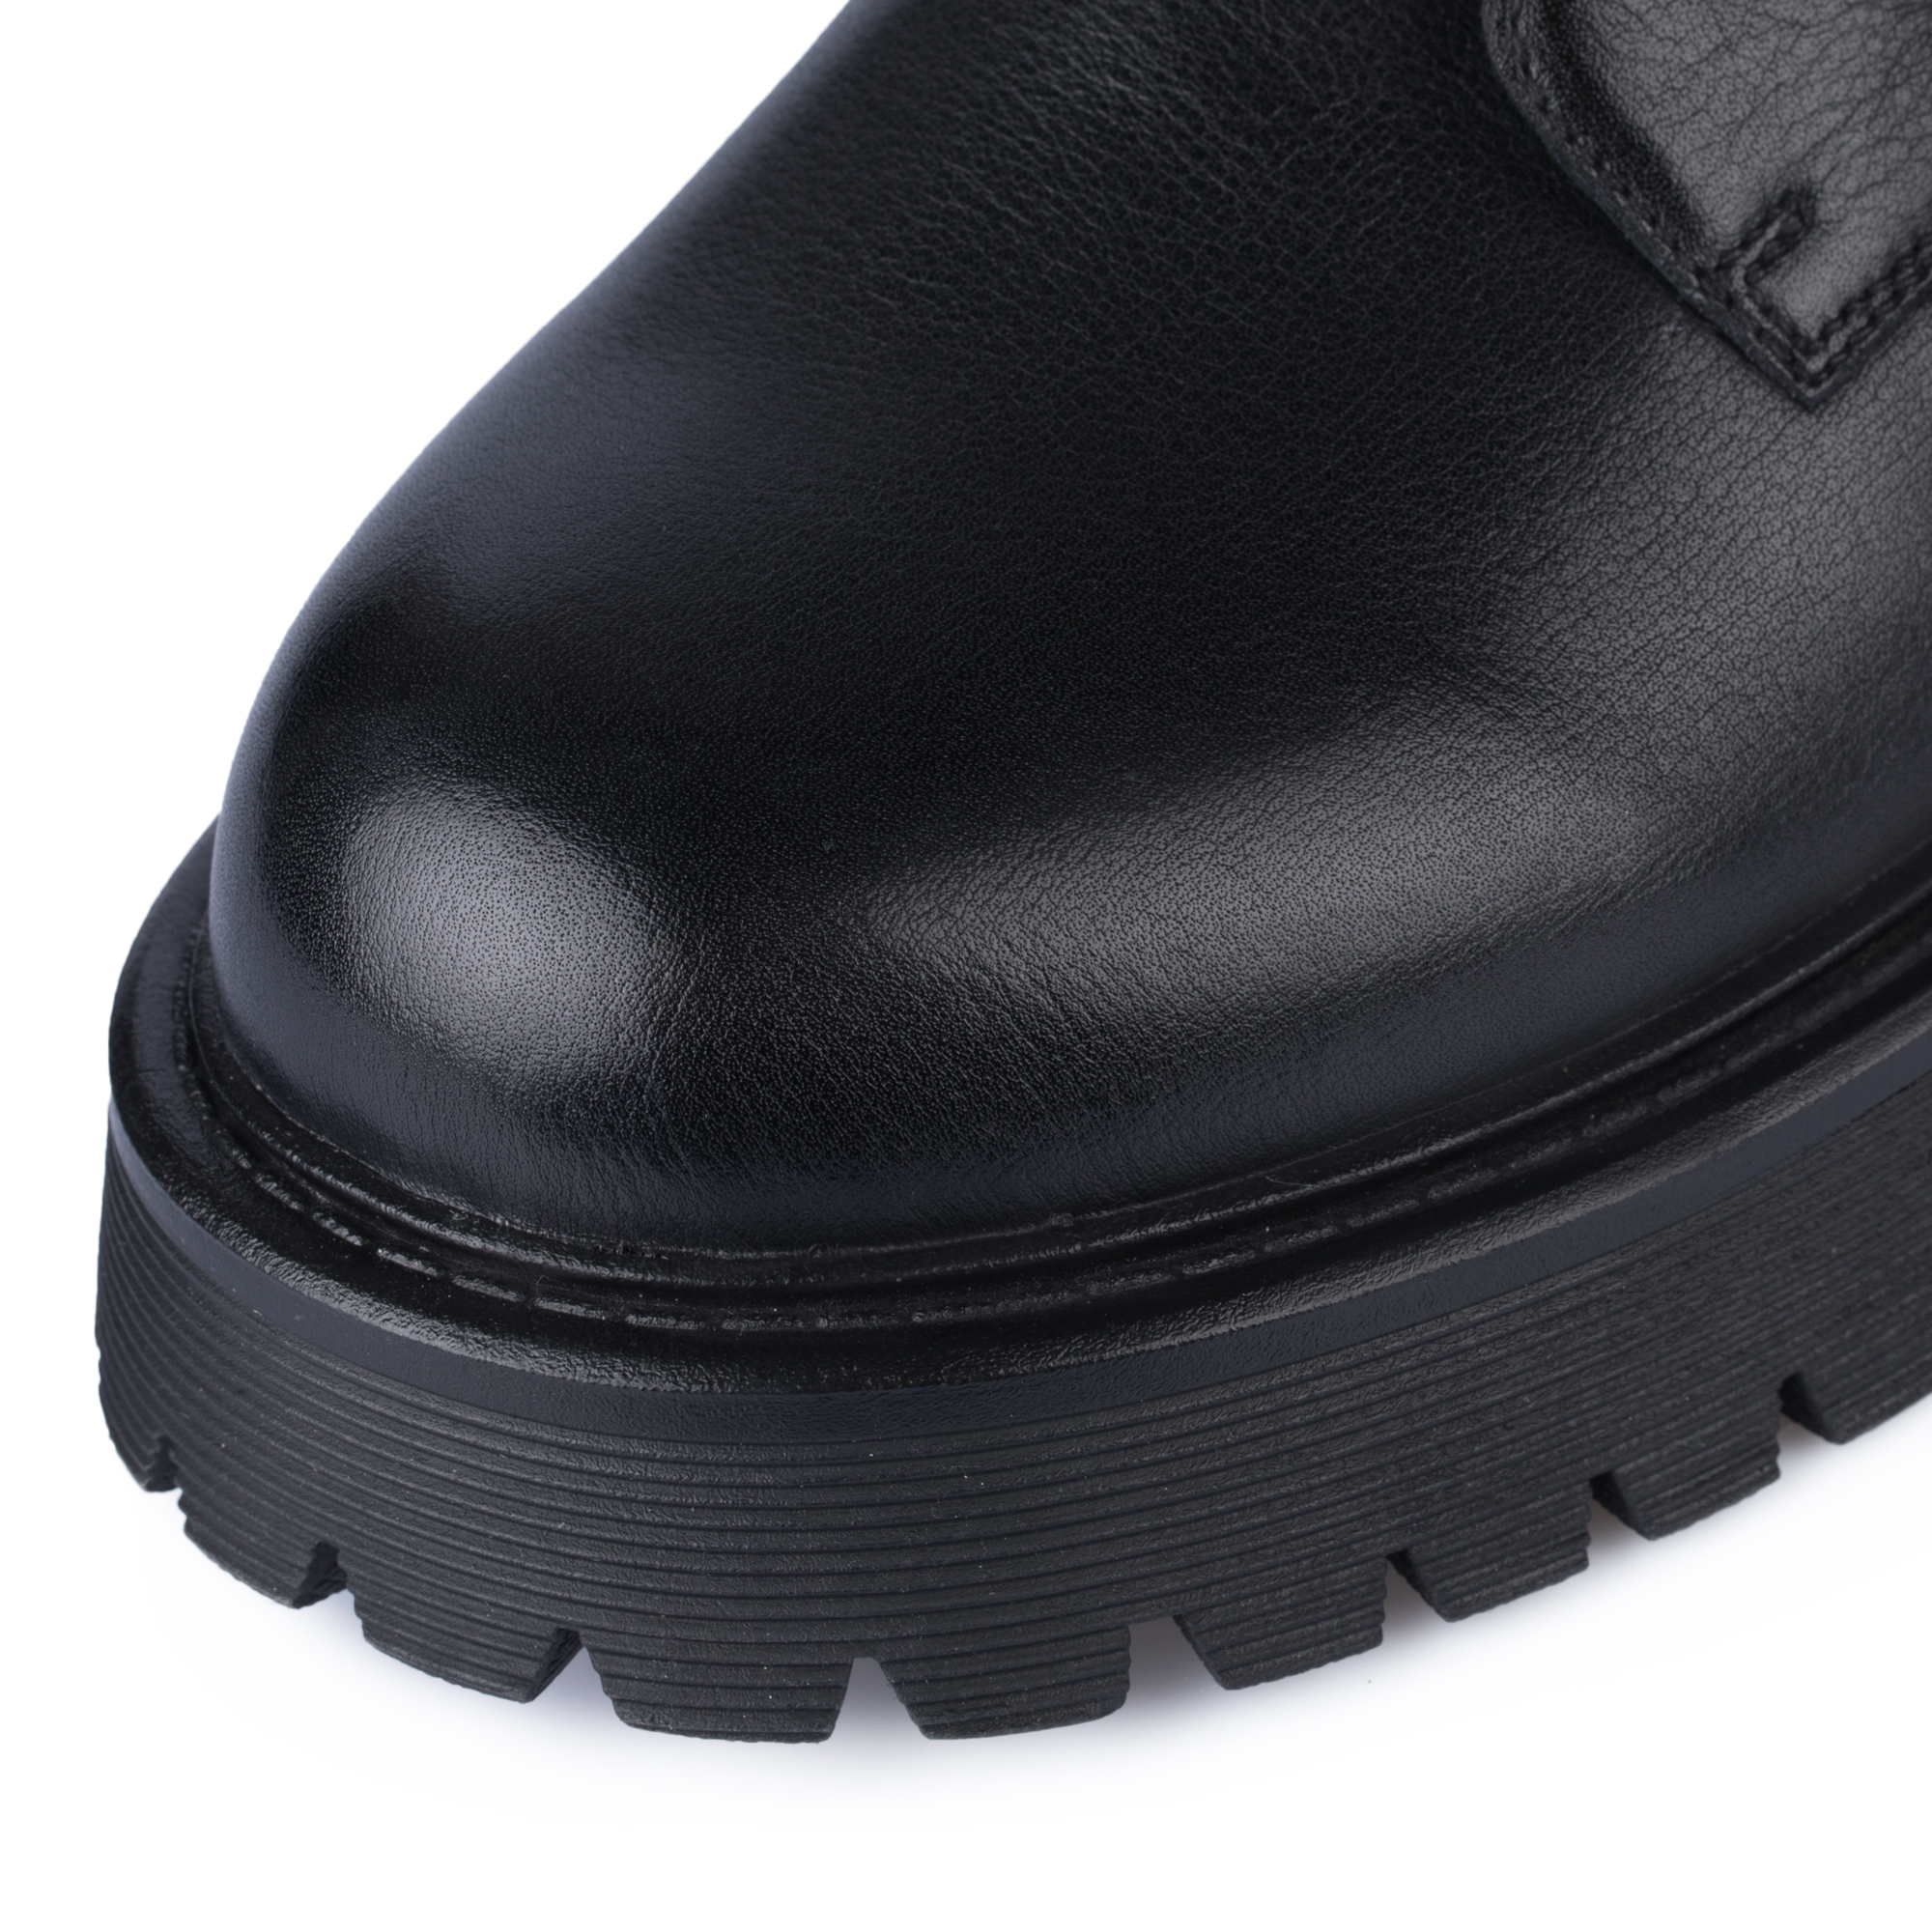 Ботинки Thomas Munz 058-991A-2102, цвет черный, размер 37 - фото 6